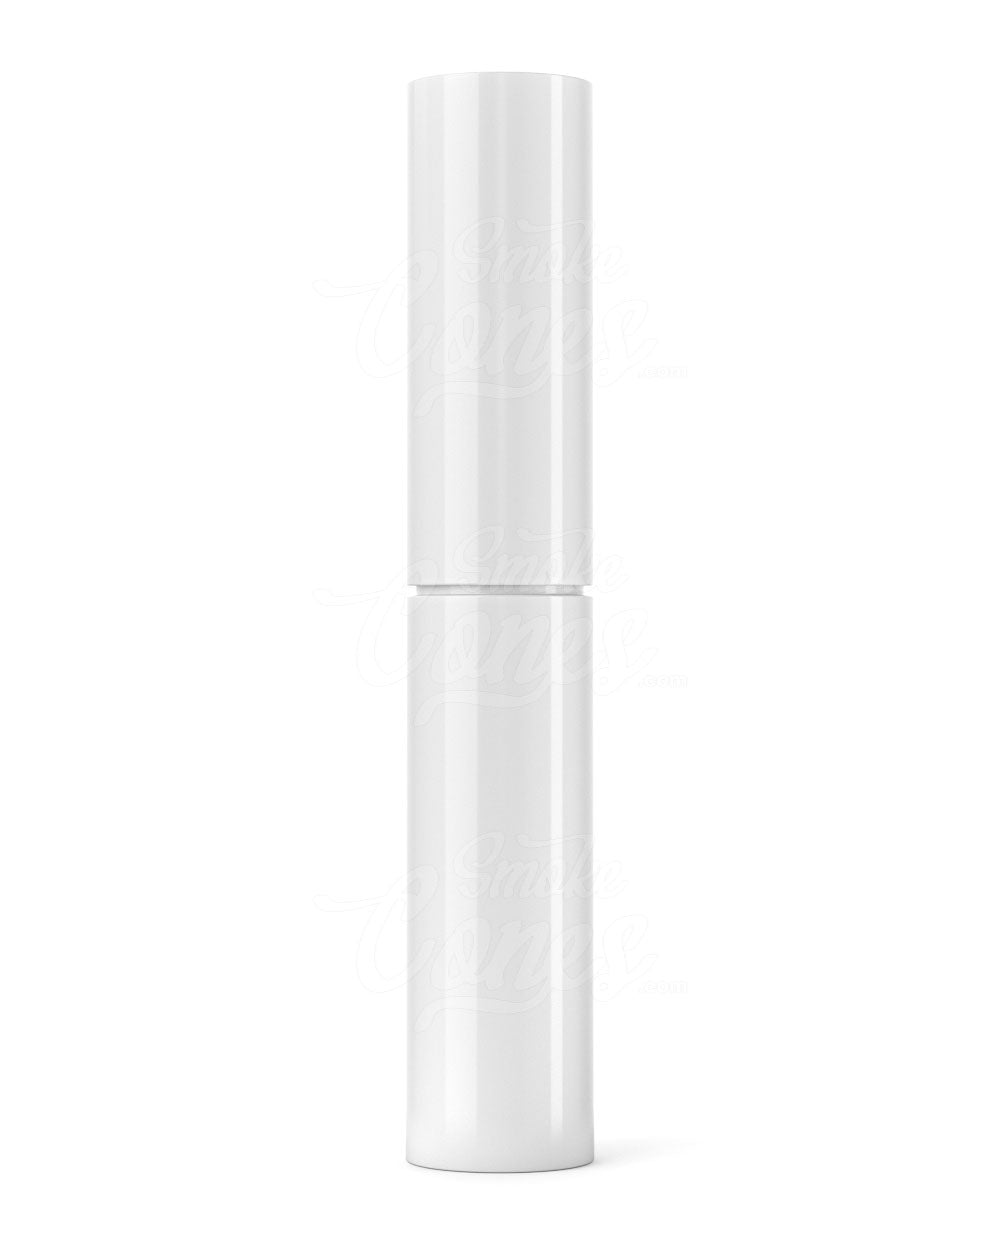 140mm Pollen Gear KAPSŪLA Vape Cartridge Tube Base - White - 725/Box